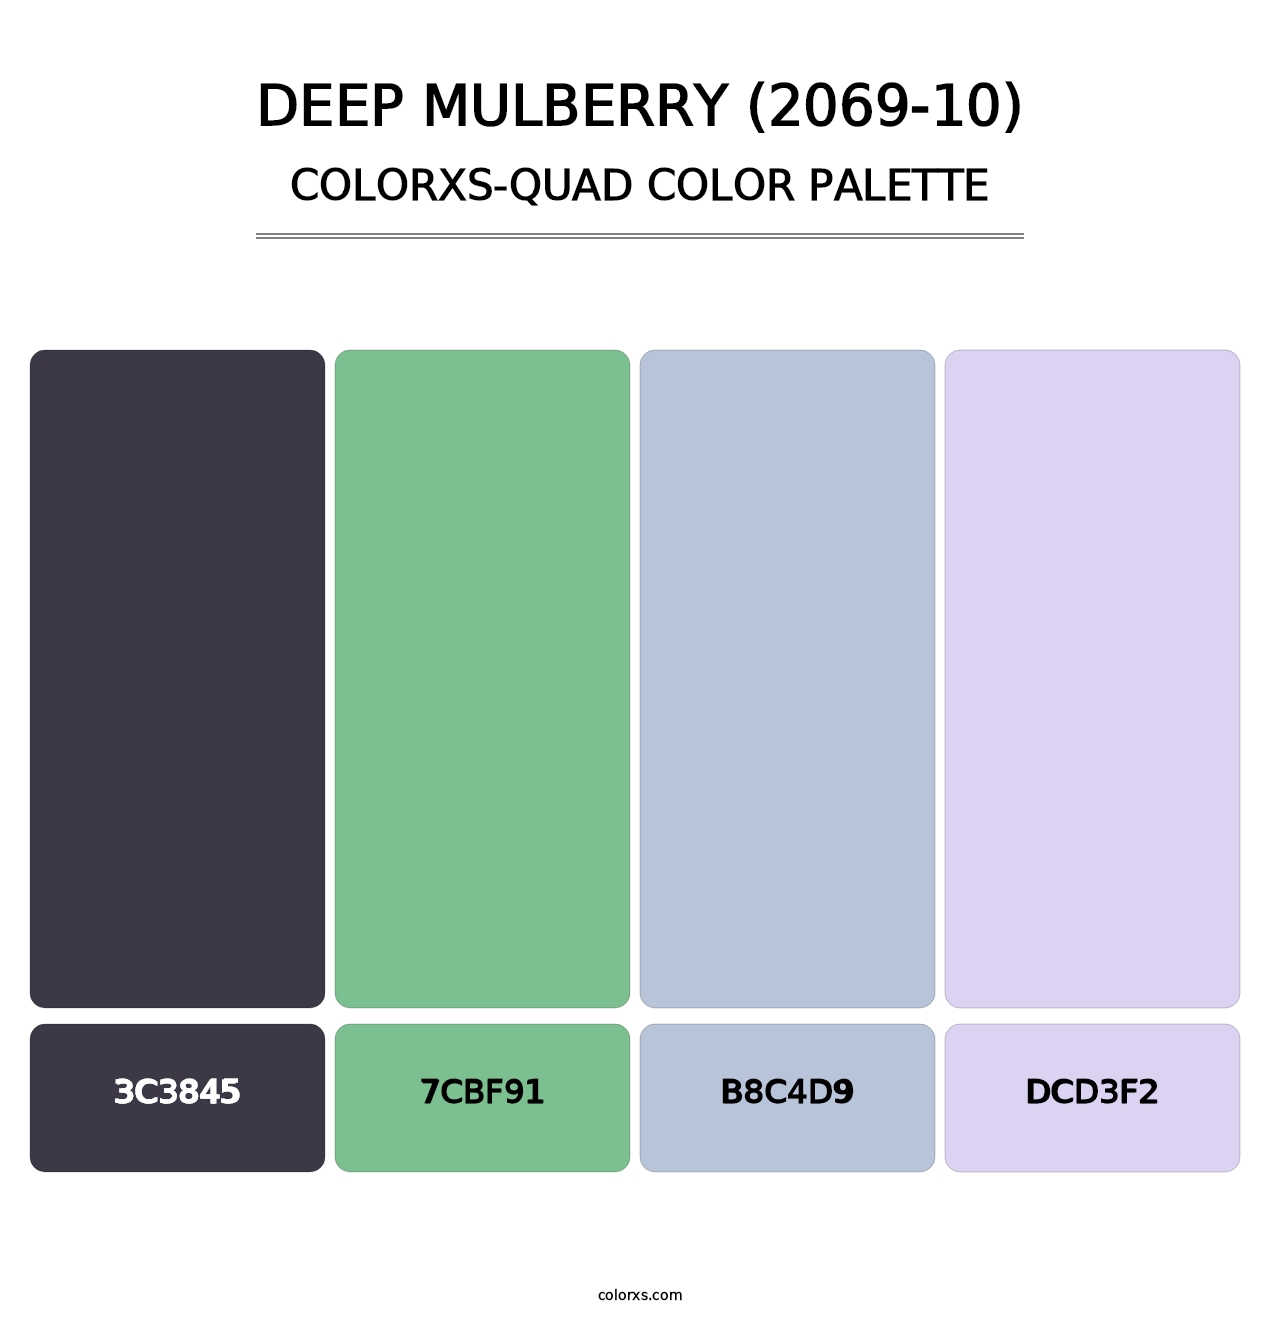 Deep Mulberry (2069-10) - Colorxs Quad Palette